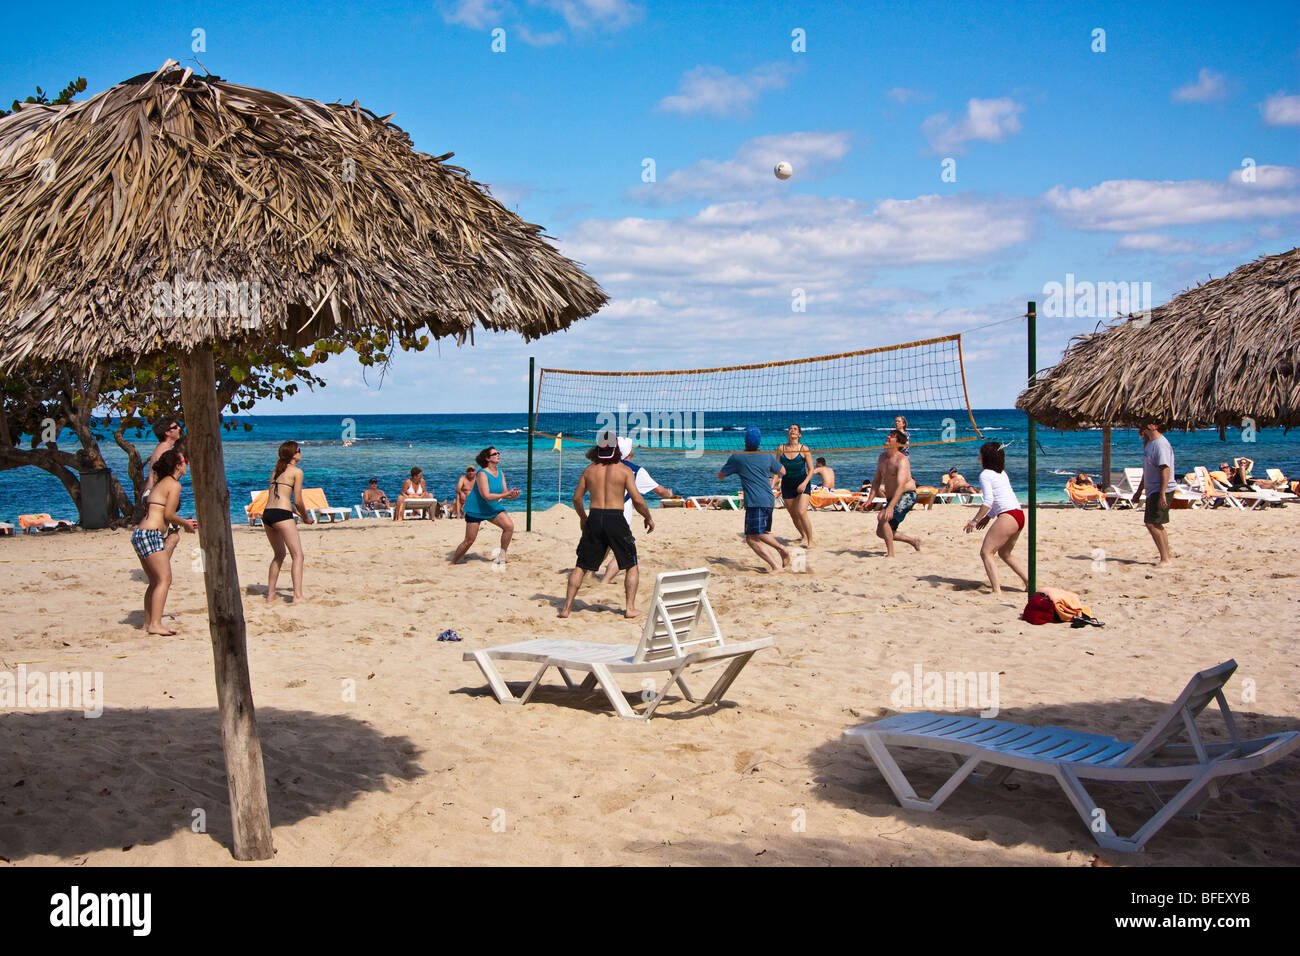 Menschen spielen Beach-Volleyball, Ball in der Luft greifen, Kuba, Karibik Stockfoto